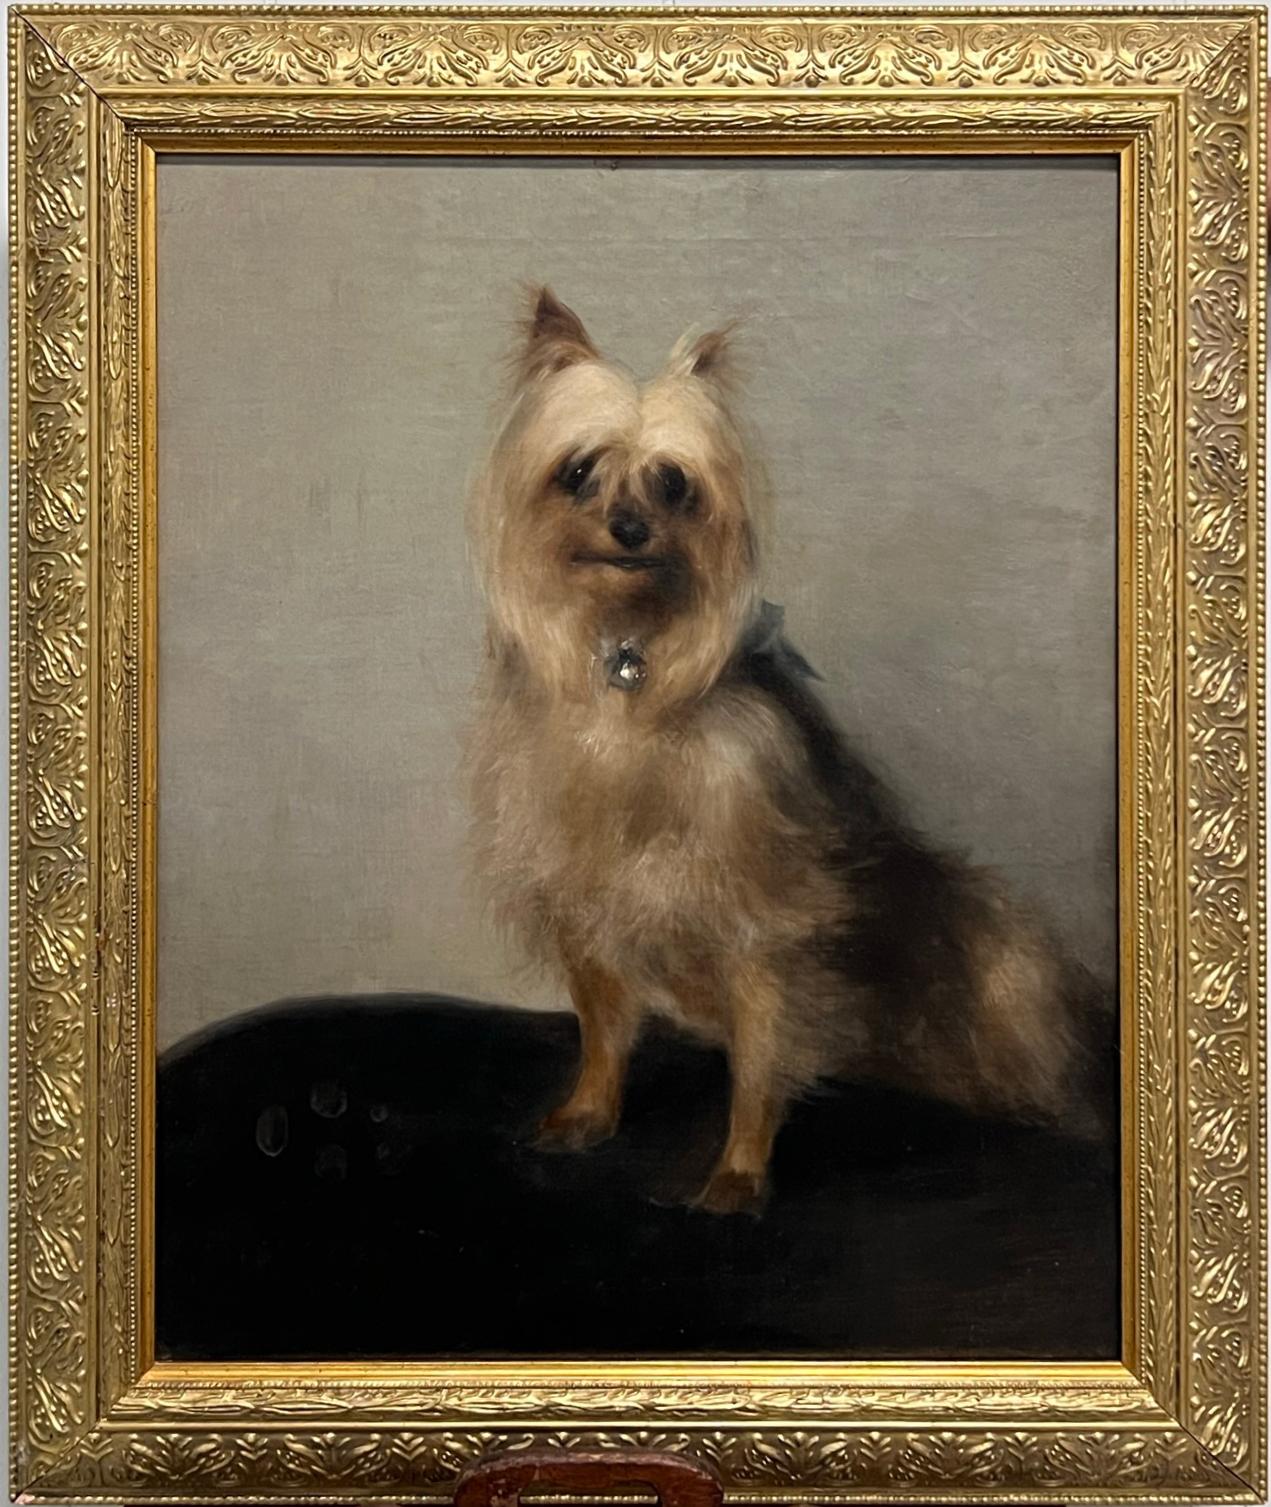 Portrait Painting Sister Phoebe - Portrait ancien de chien terrier de Yorkie du 19ème siècle dans un cadre sculpté et doré